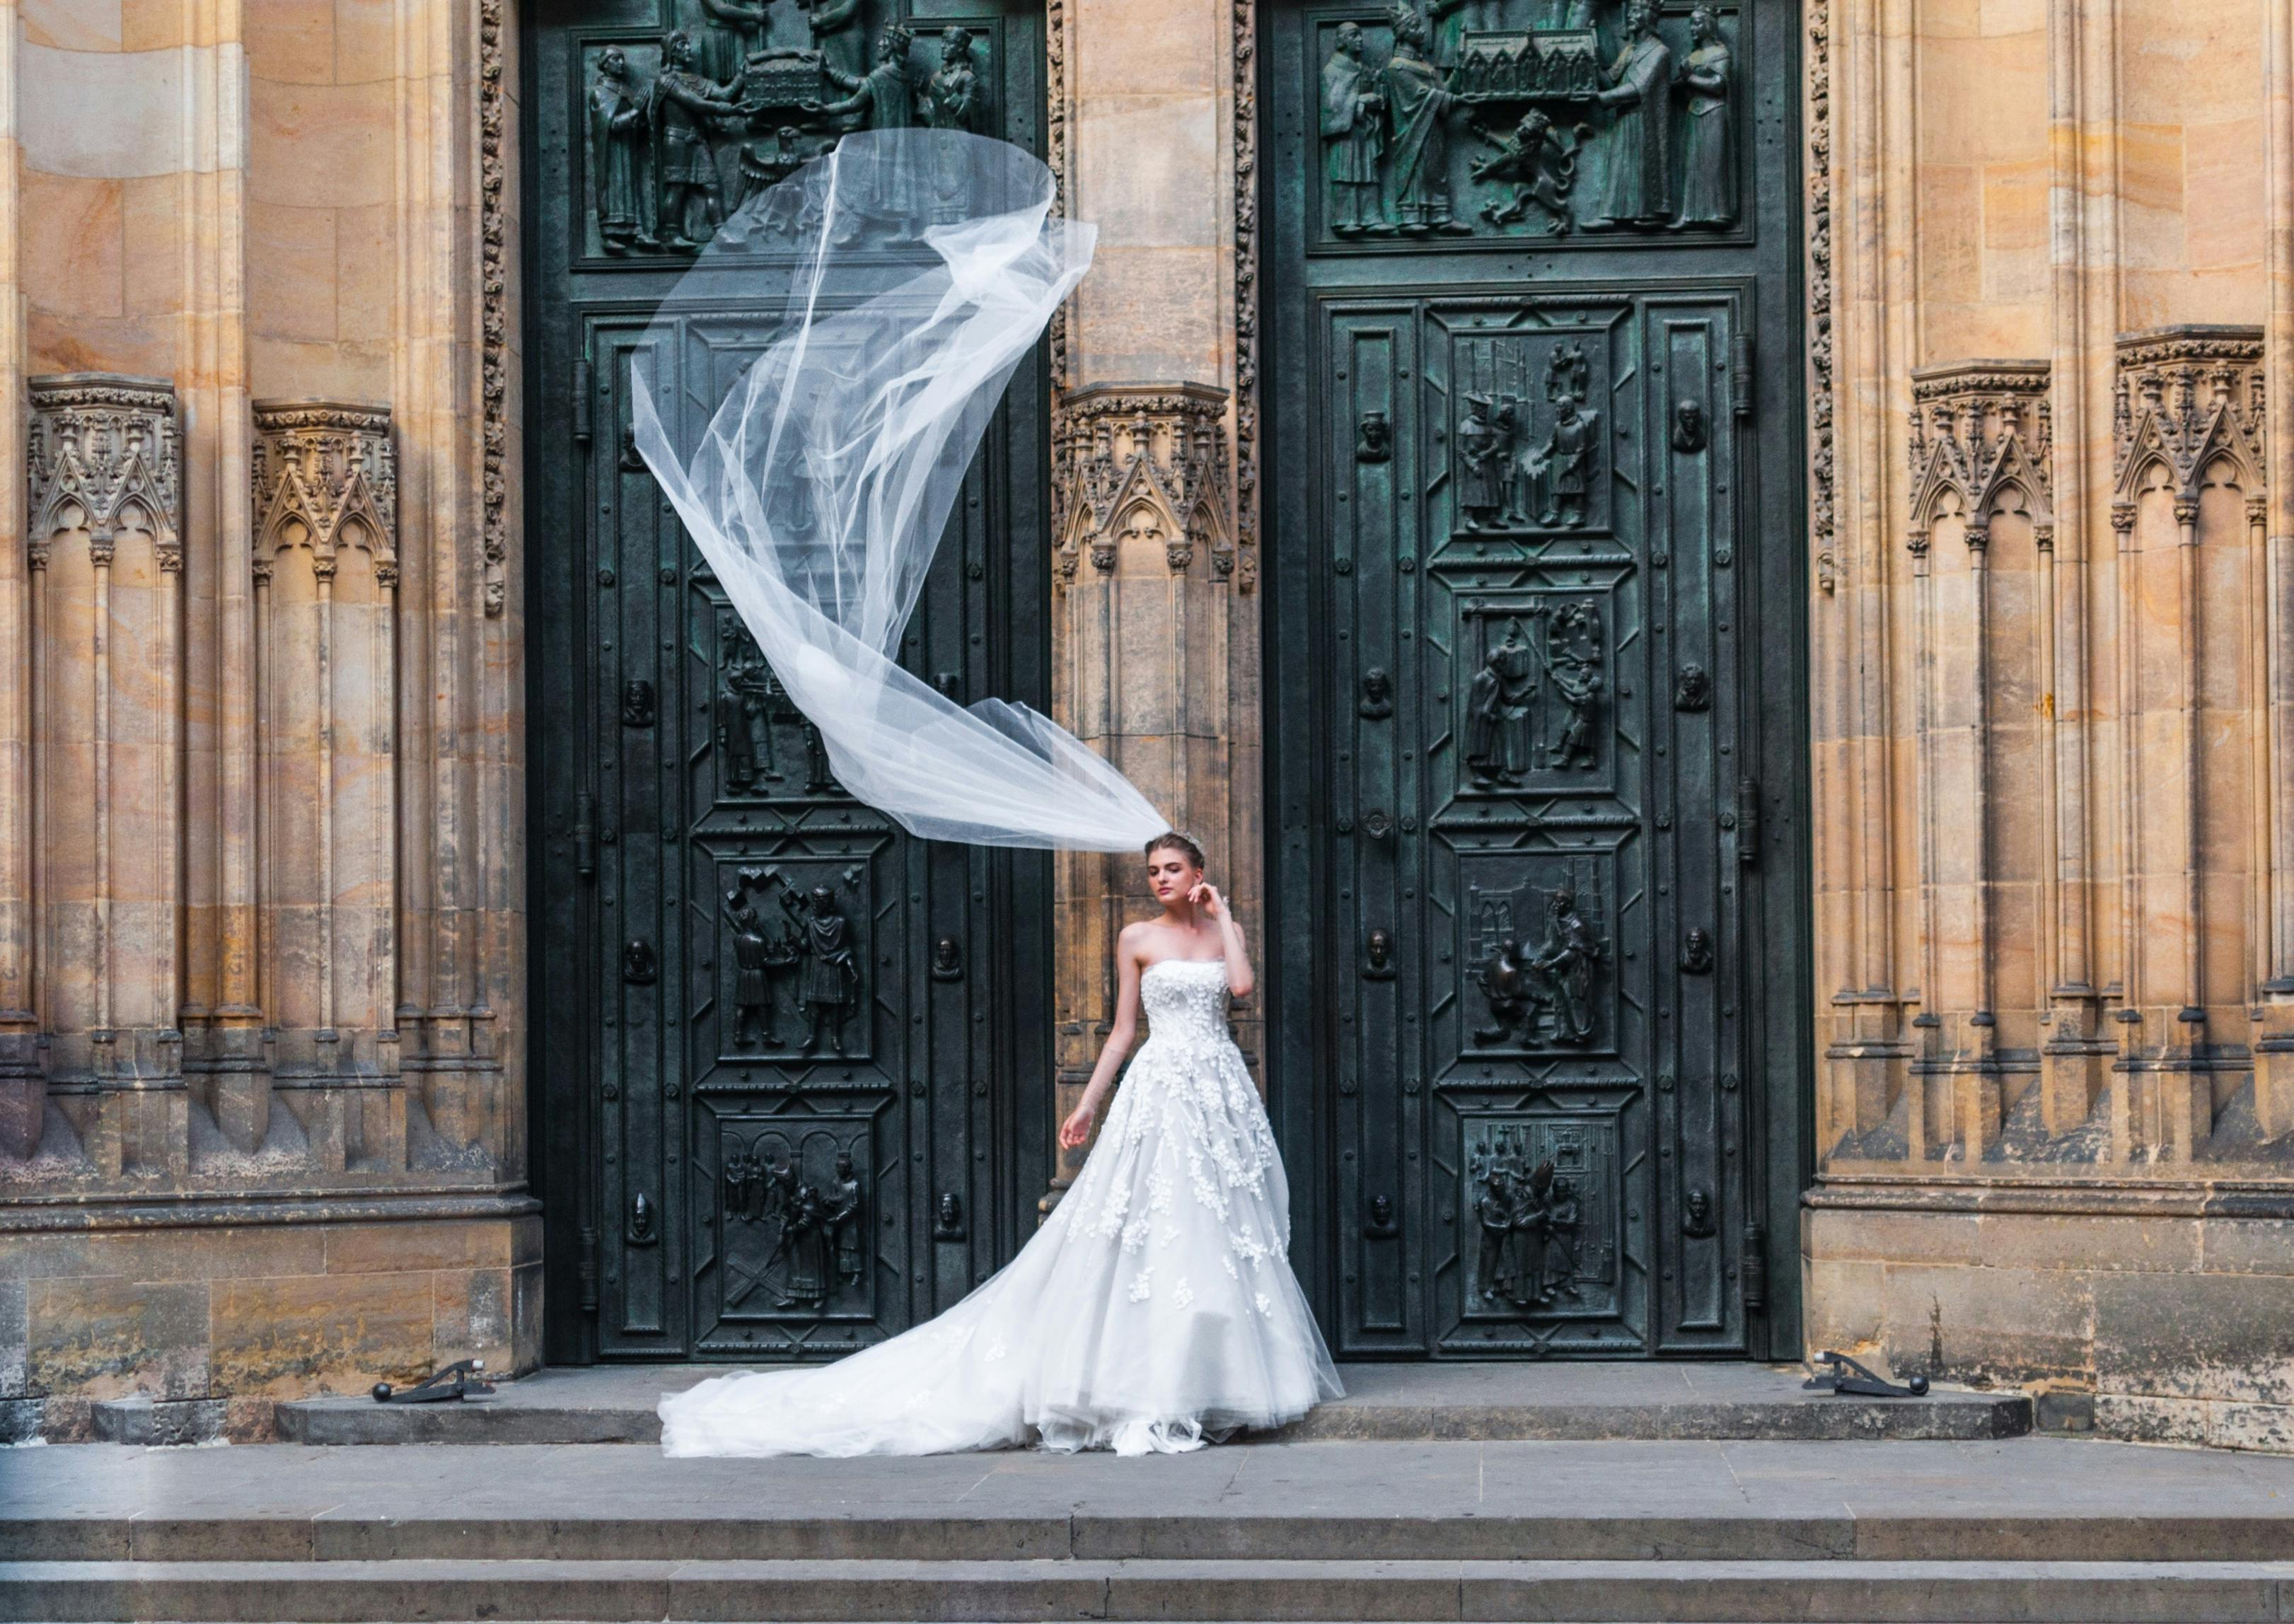 Une mariée se tenant devant des portes fermées | Source : Pexels